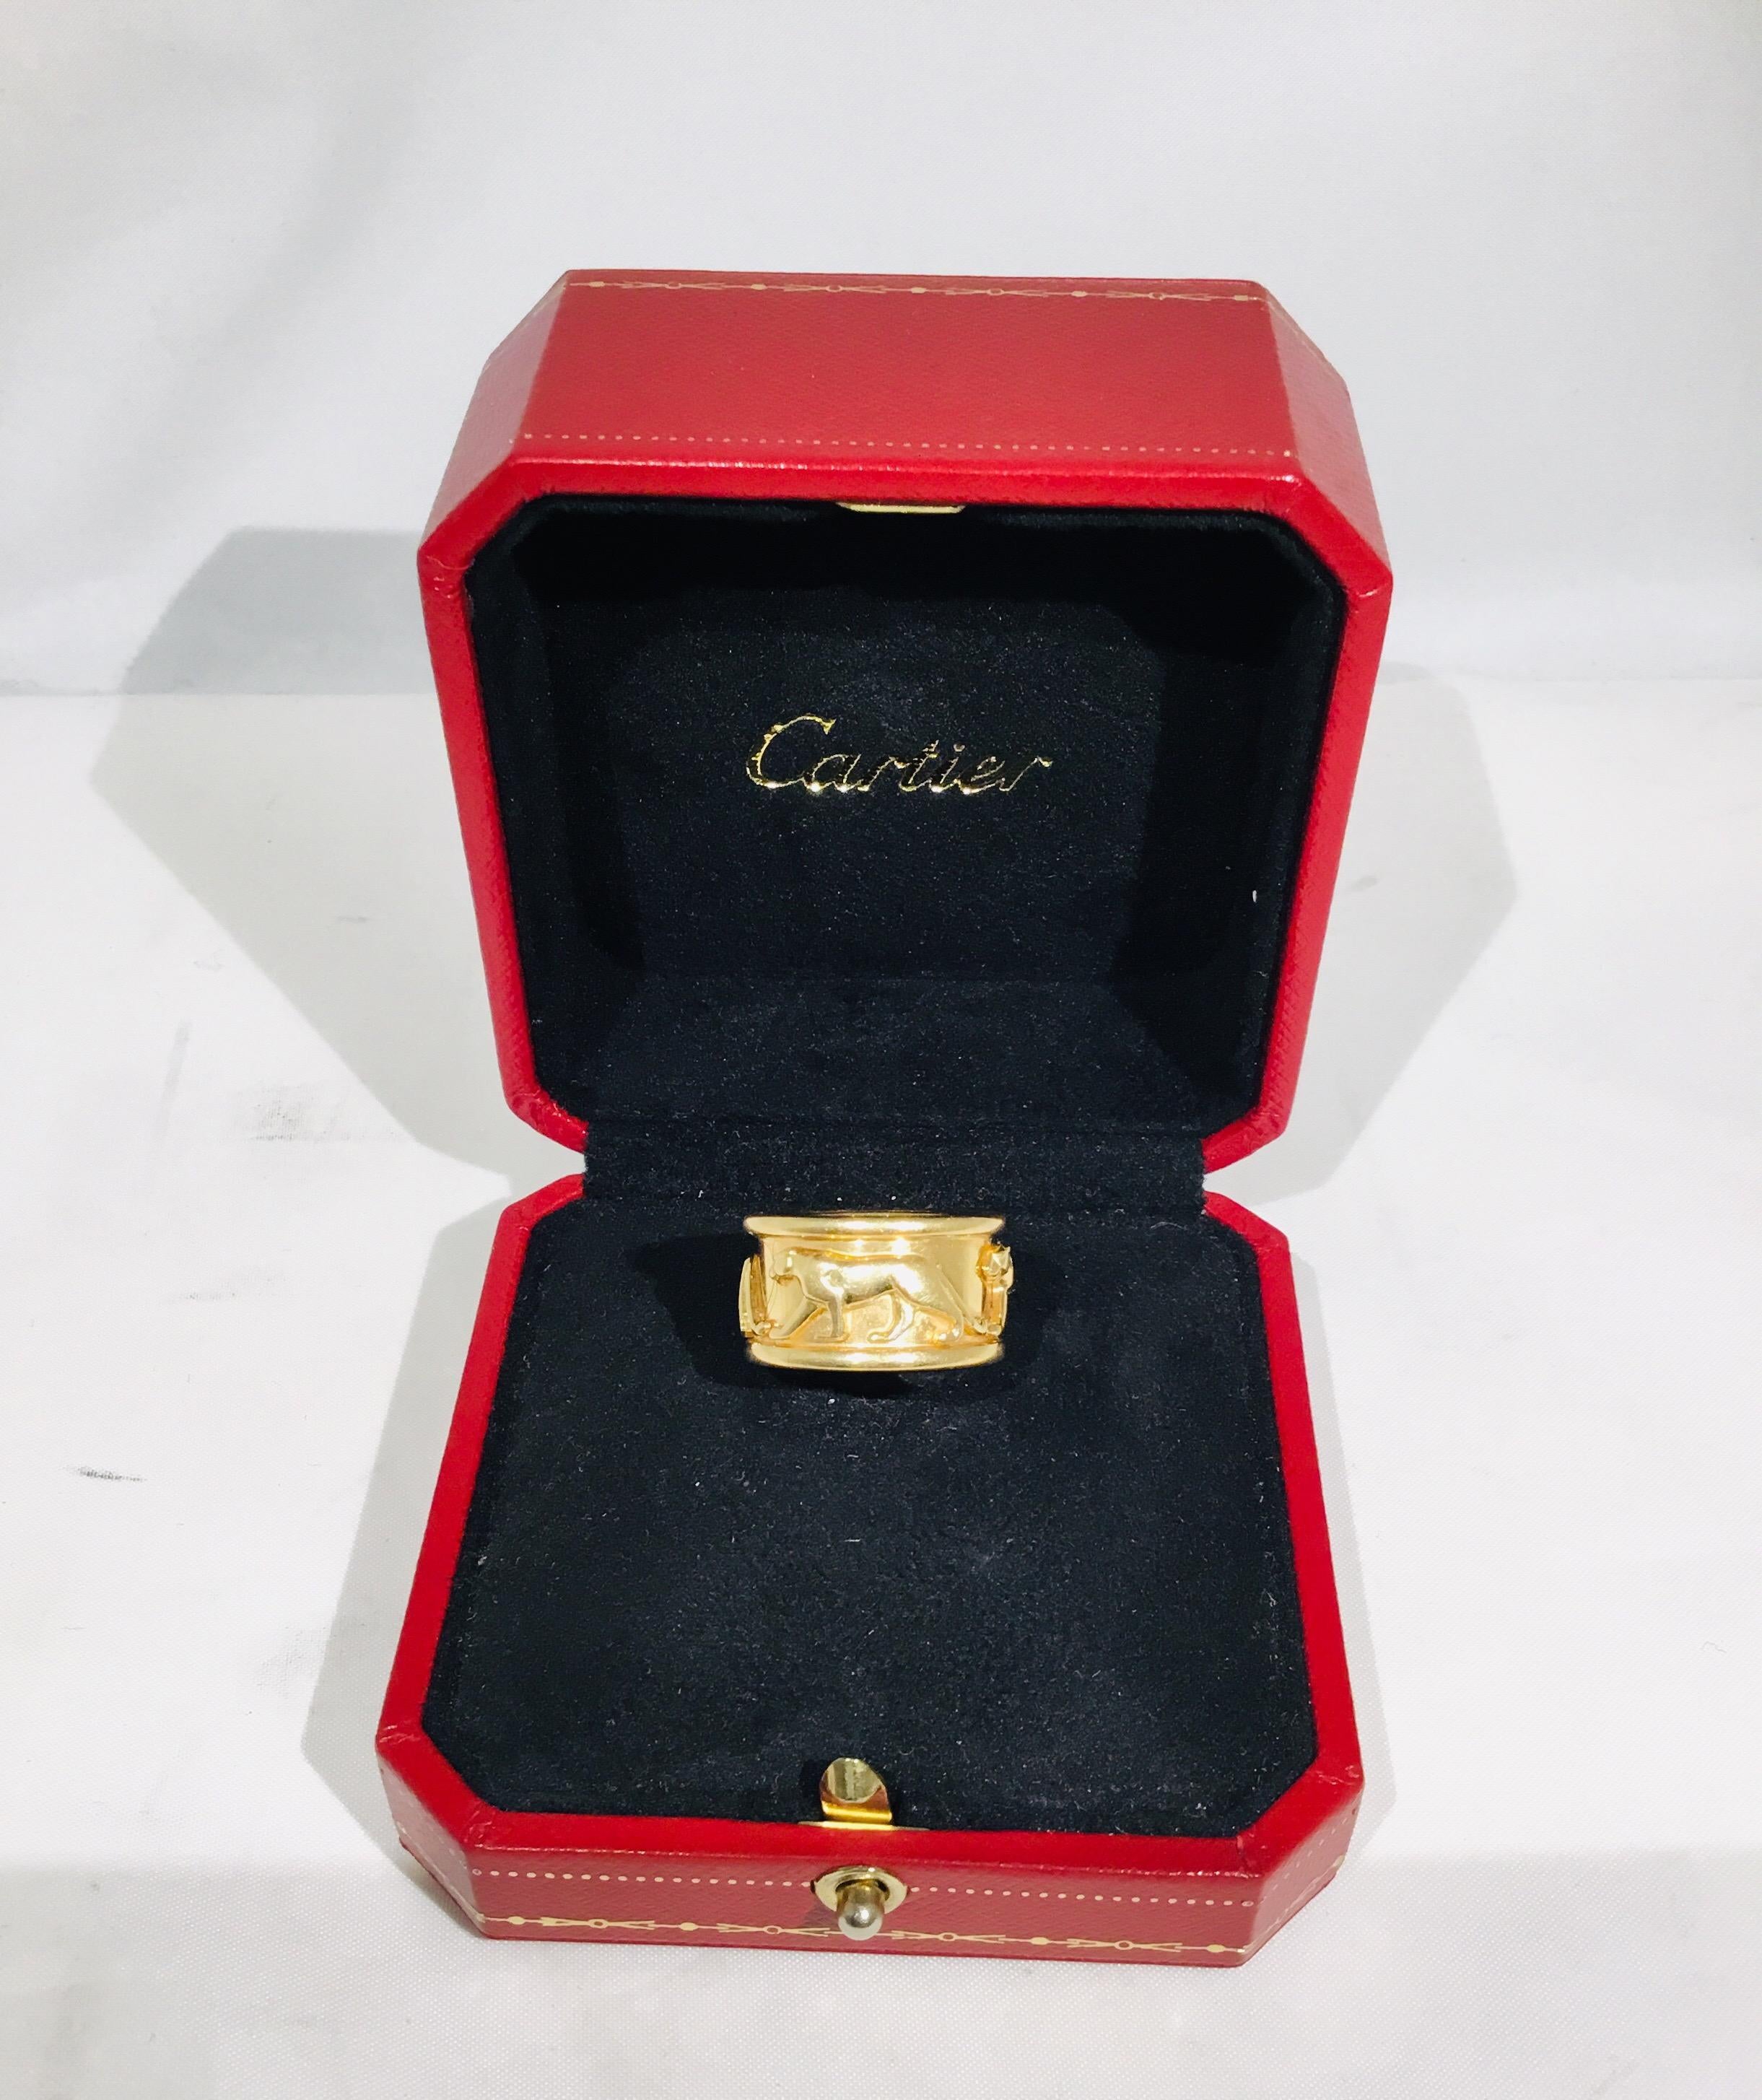 Cartier Bandring aus 18 Karat Gelbgold mit schreitenden Panthern. Der Ring ist mit Cartier-Punzen versehen und wird in der Originalverpackung geliefert.

Breite 12mm
Gewicht 13,02g
Größe: 7